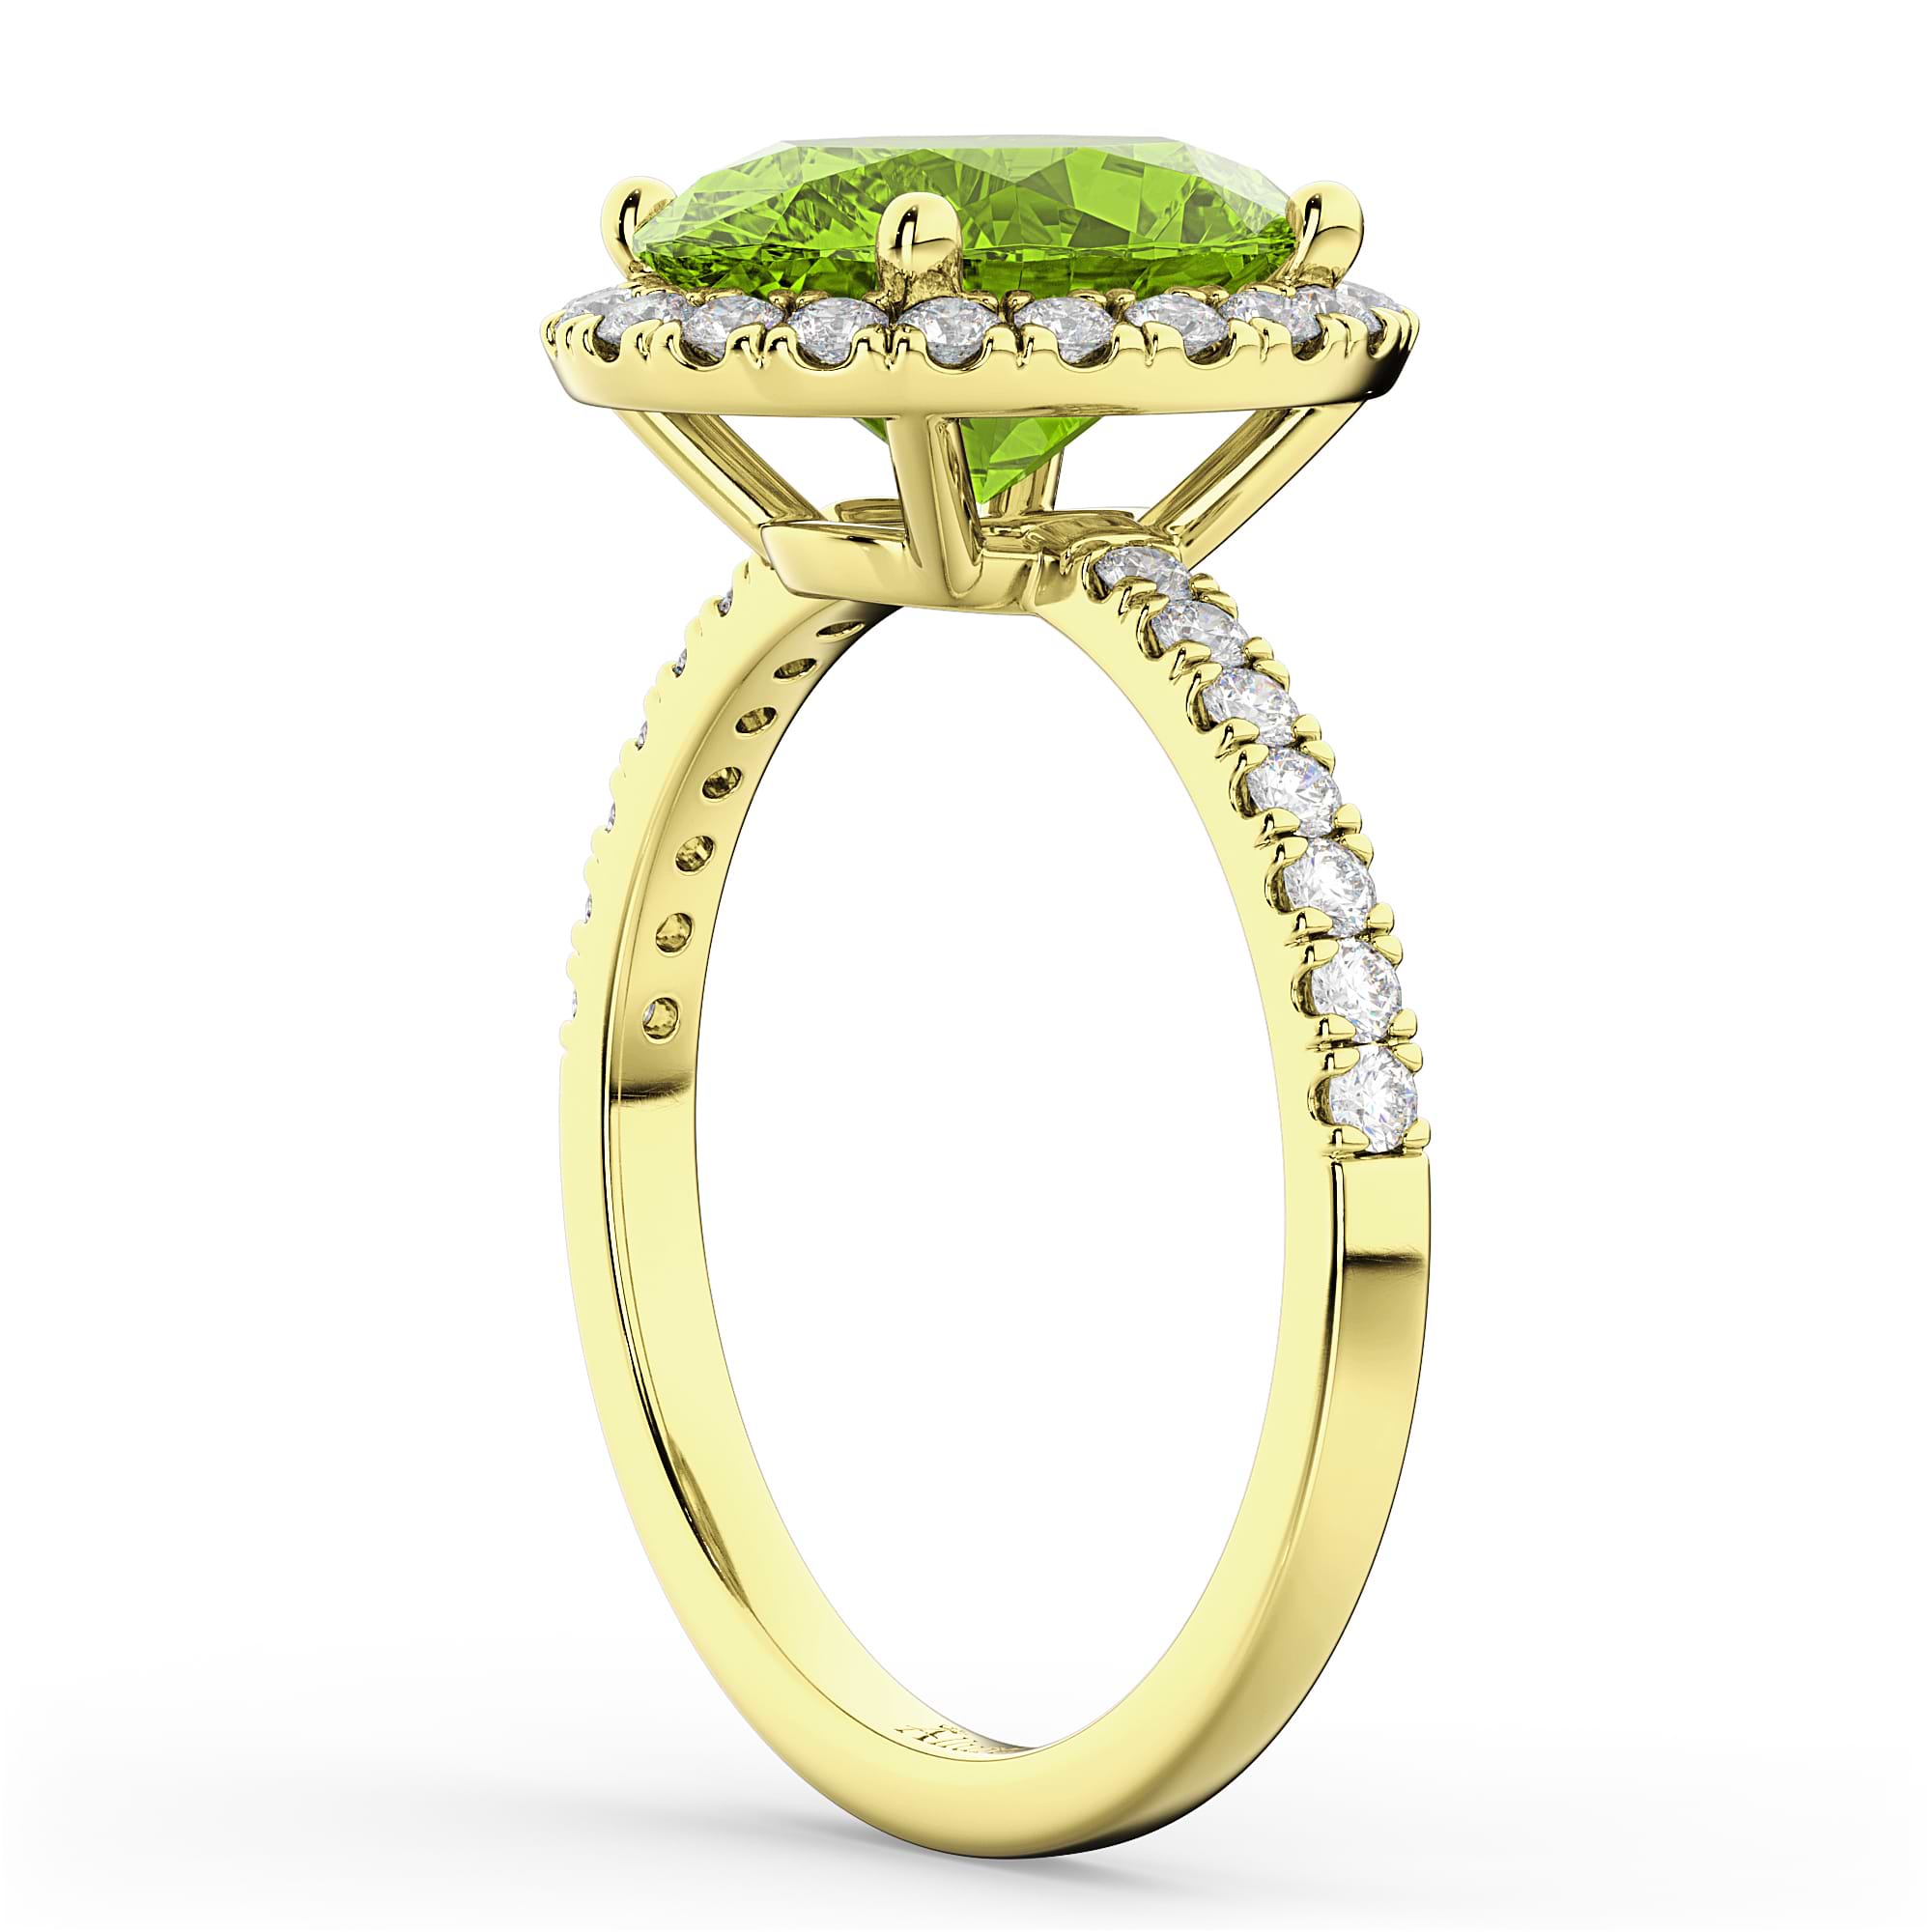 Oval Cut Halo Peridot & Diamond Engagement Ring 14K Yellow Gold 3.01ct